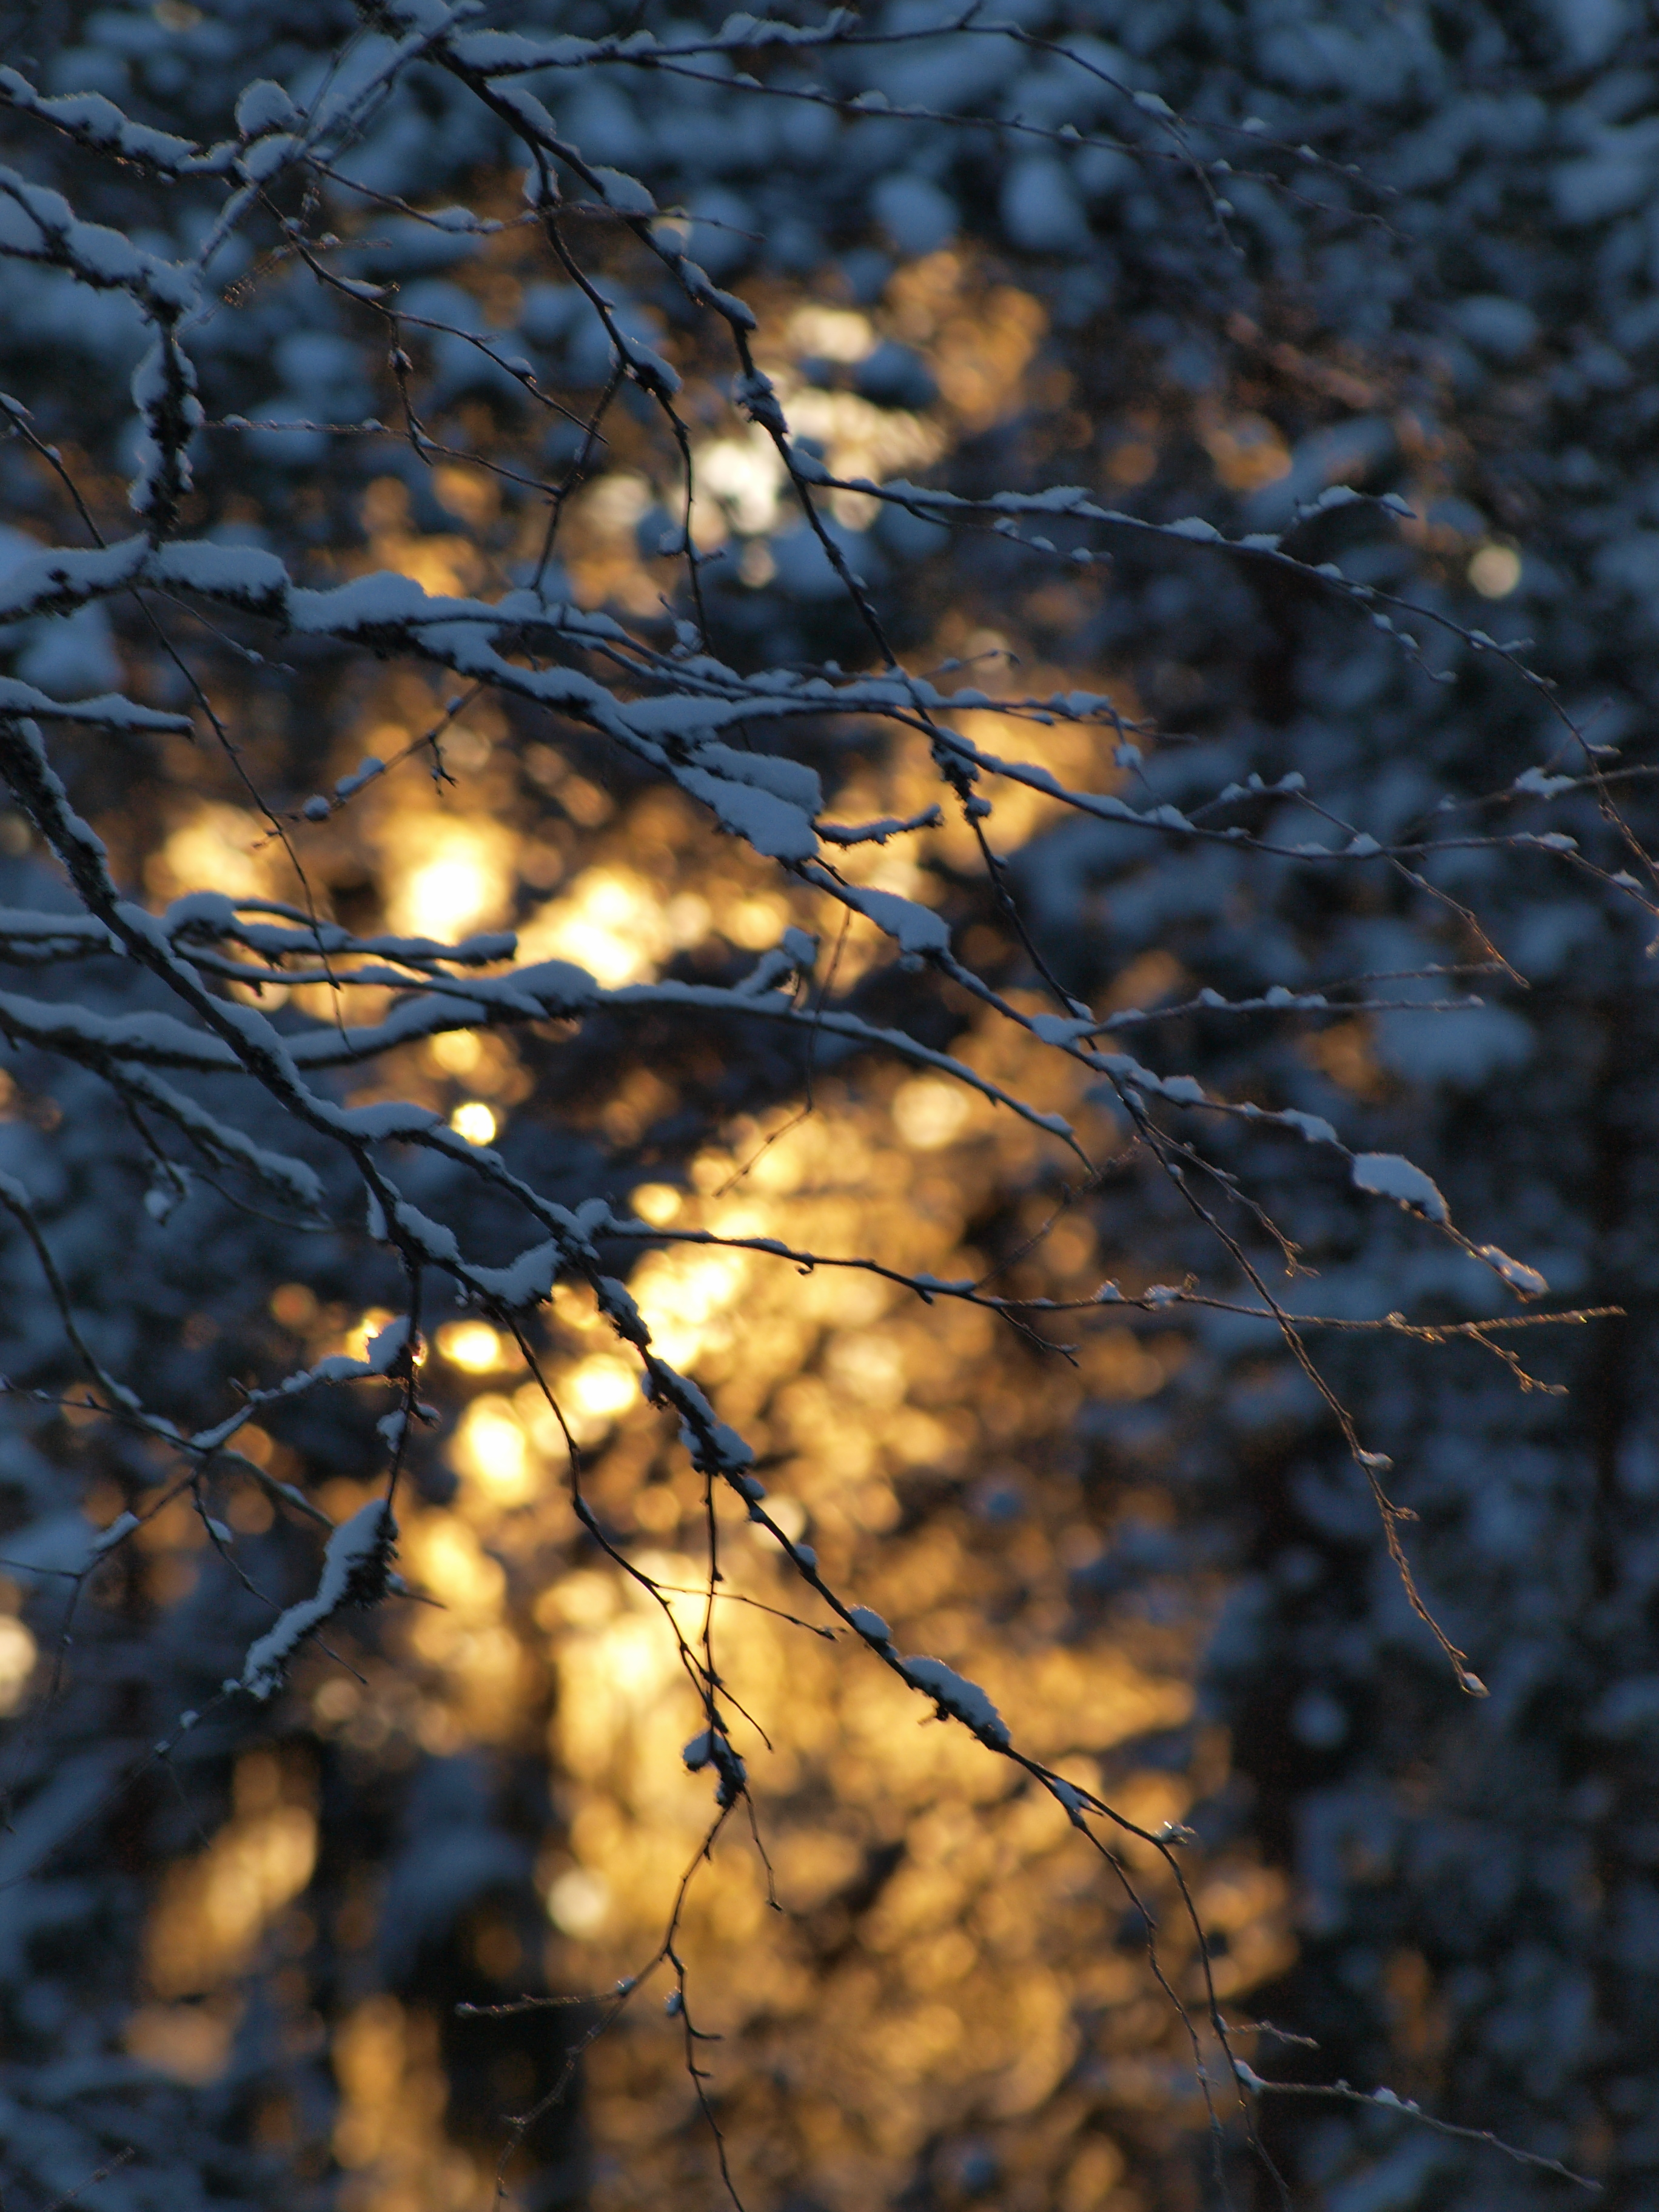 Frozen forest photo